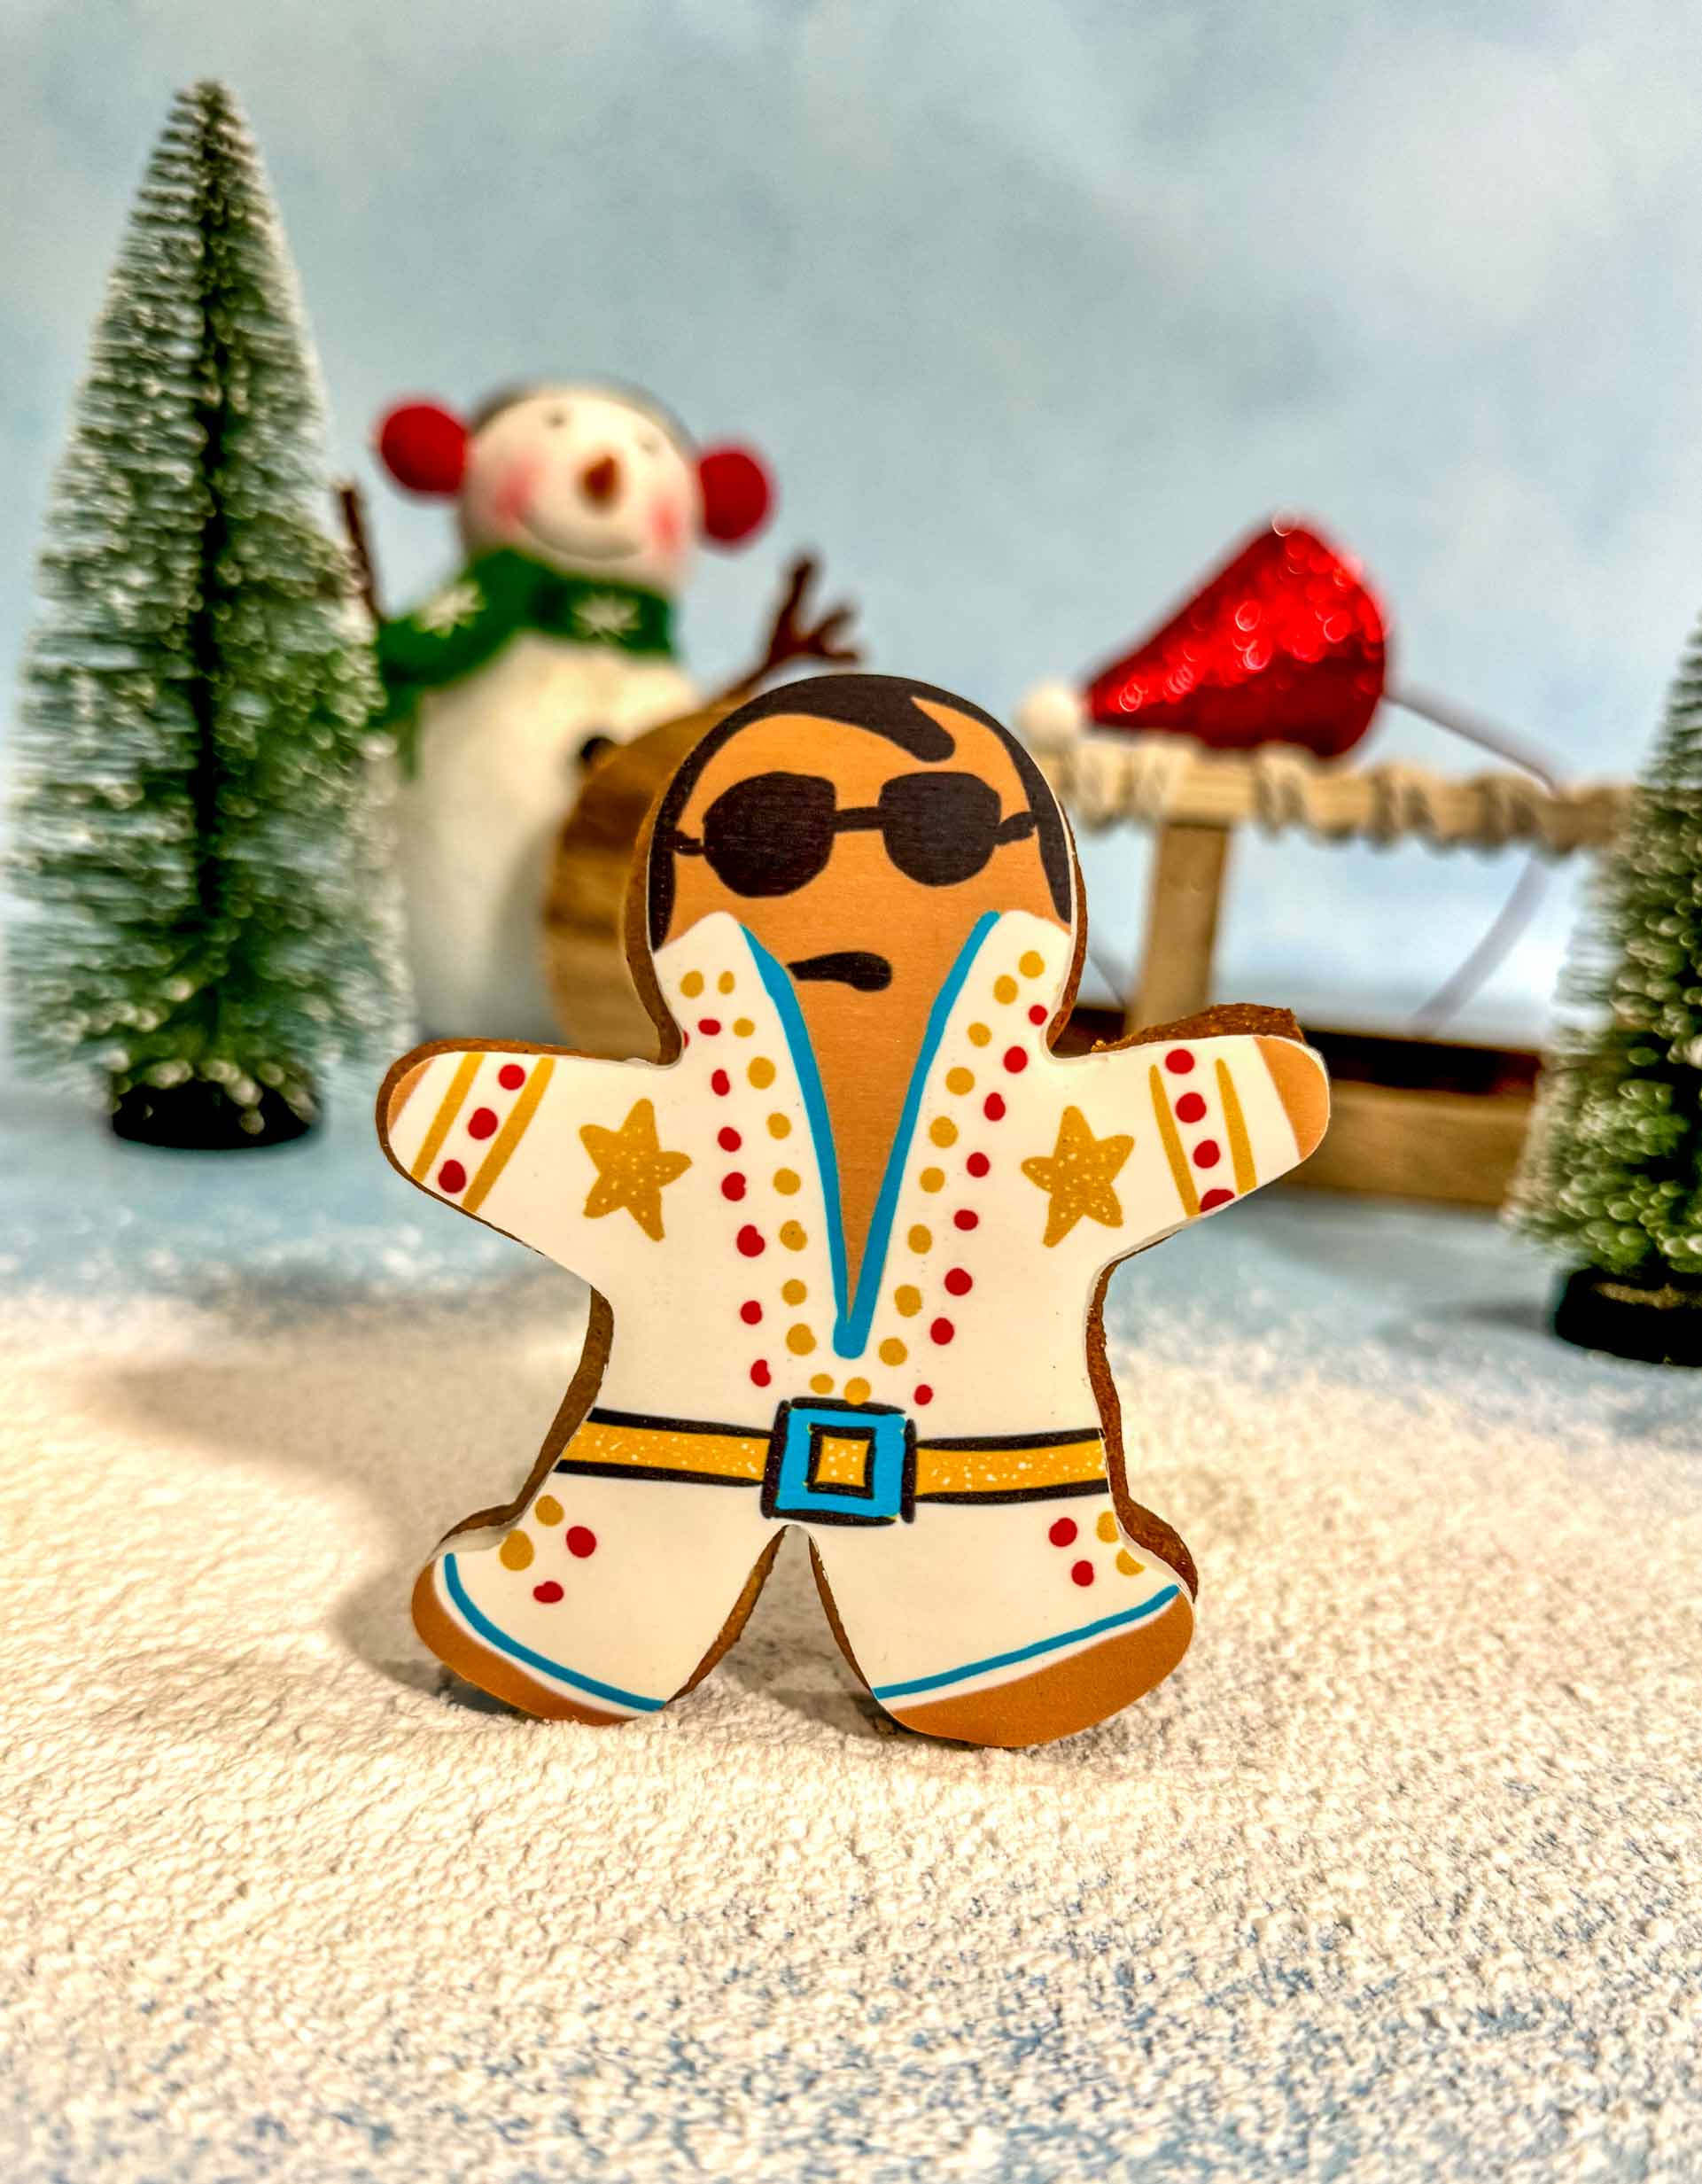 Christmas Cookies – Gingerbread Elvis